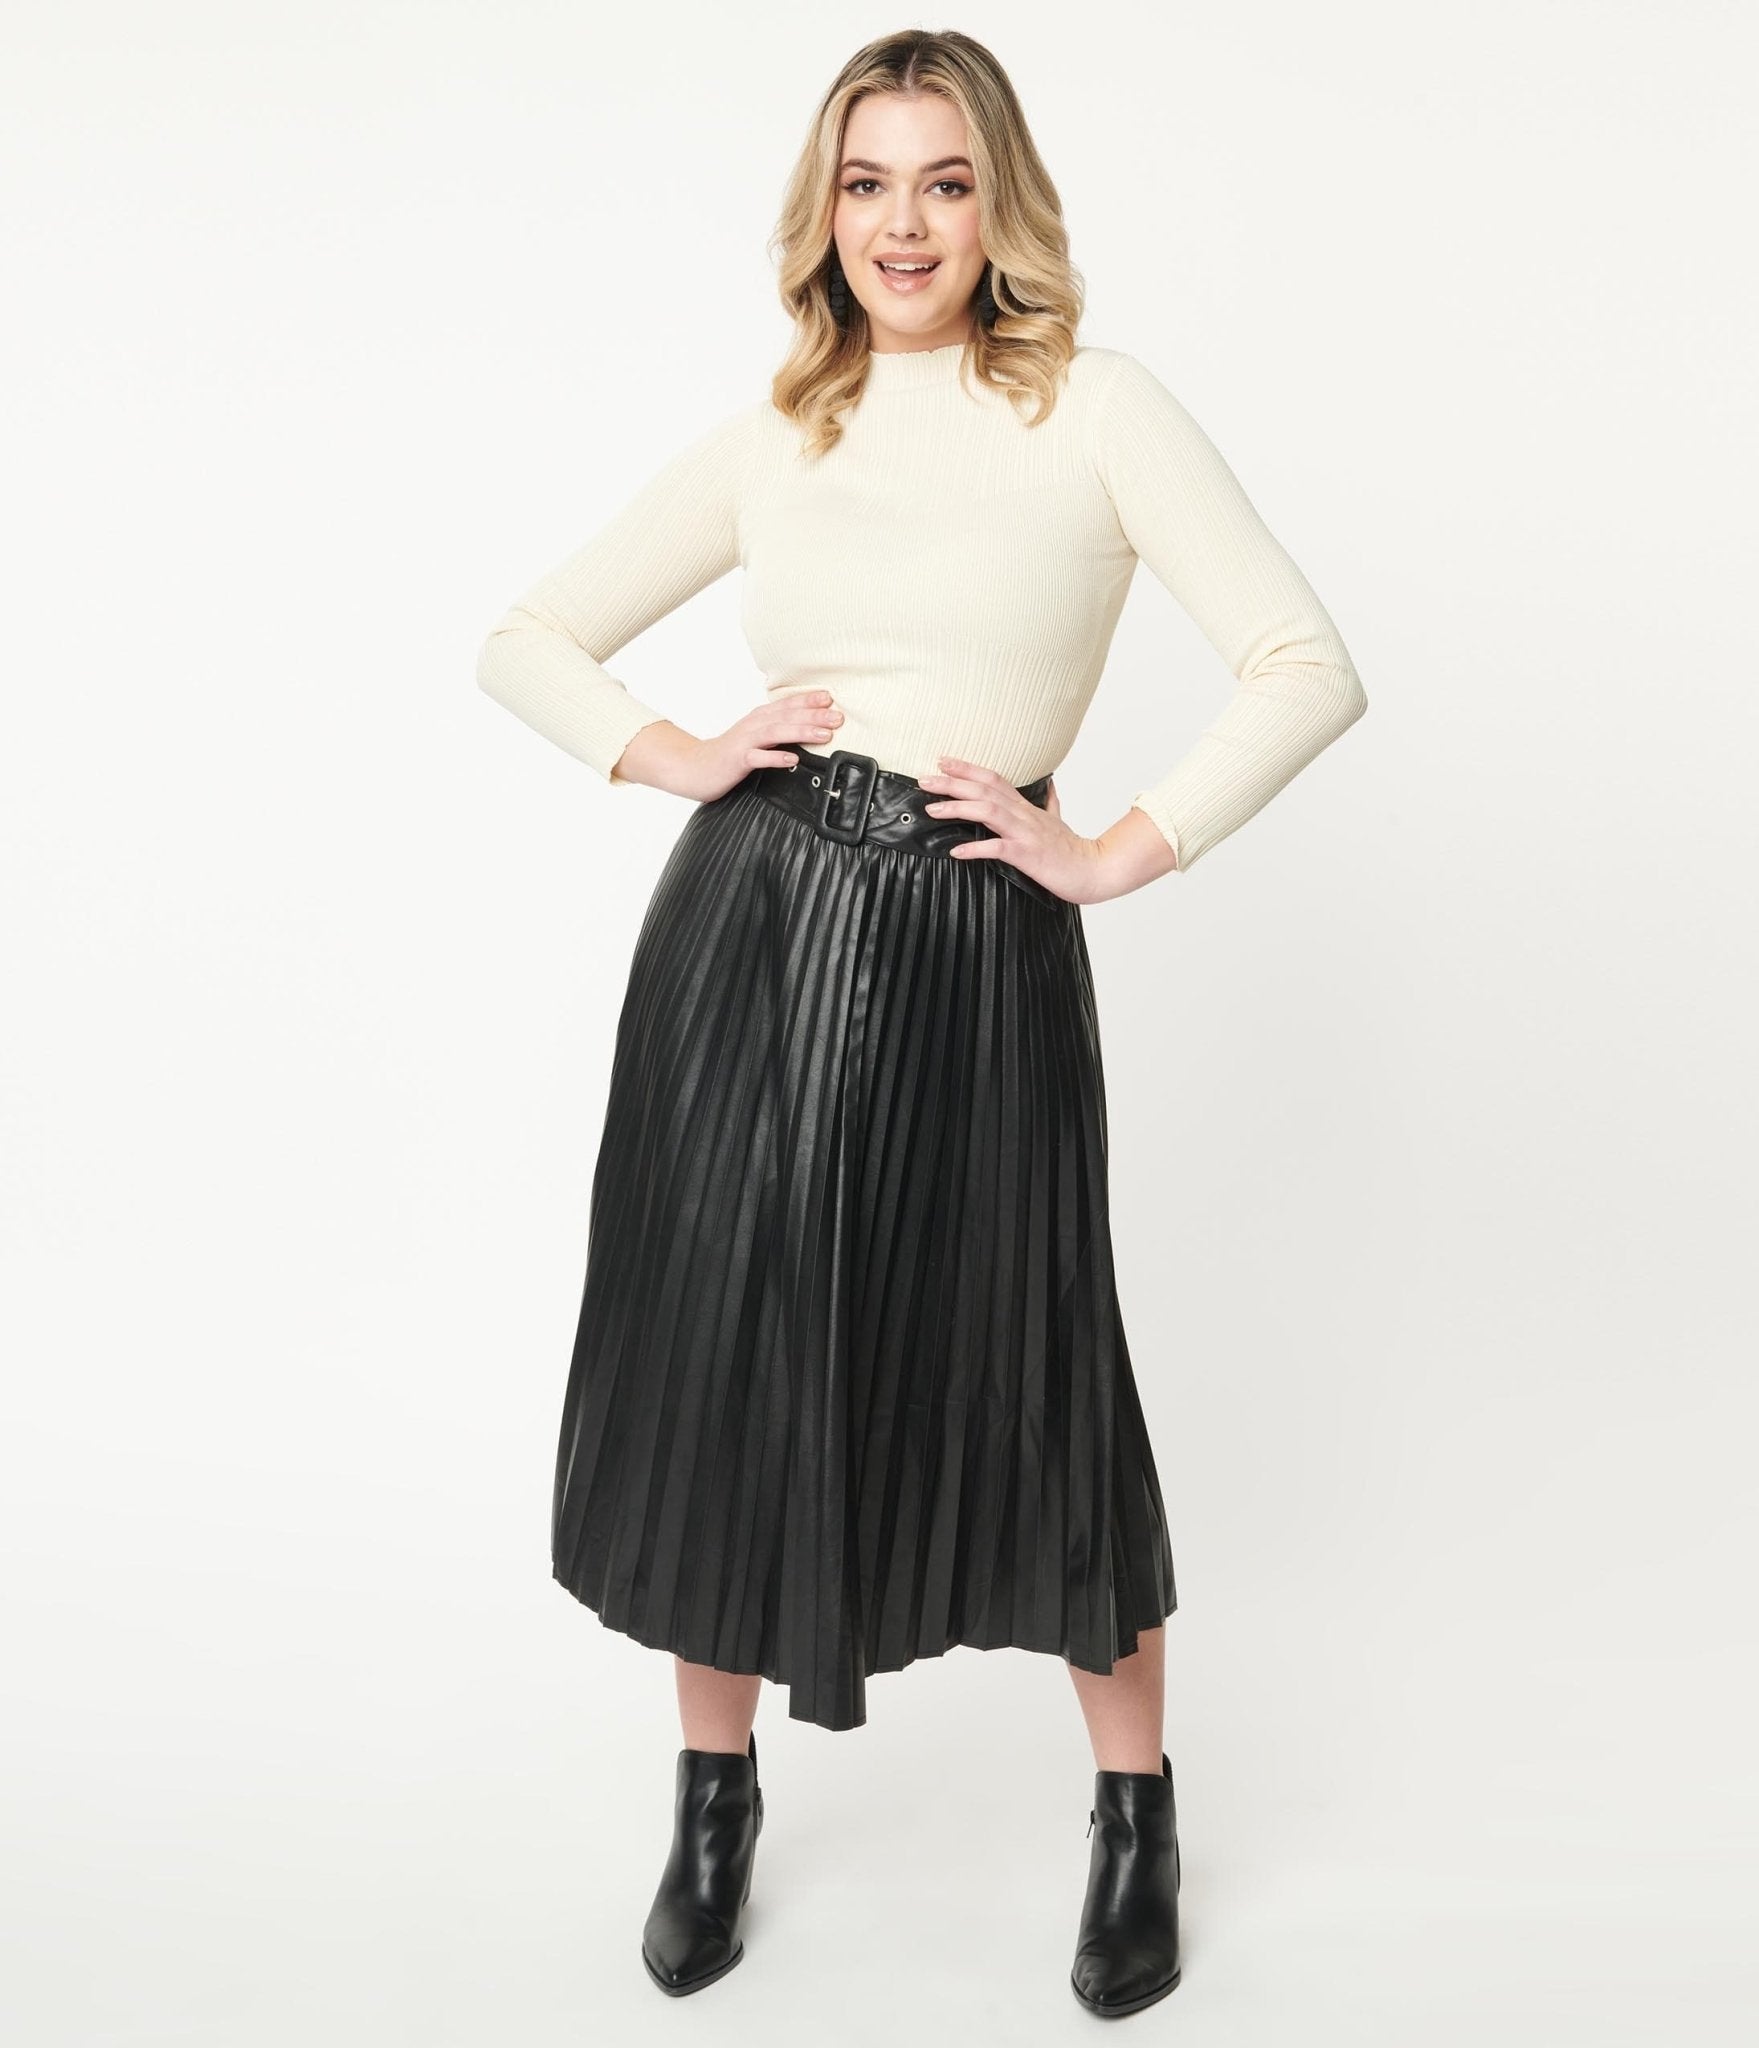 Long Skirt / Long Boho Skirt / Maxi Skirt / Full Length Skirt / Dark Brown  Skirt / Cotton Skirt / Modest Skirt / Formal Skirt / Boho Skirt -   Canada